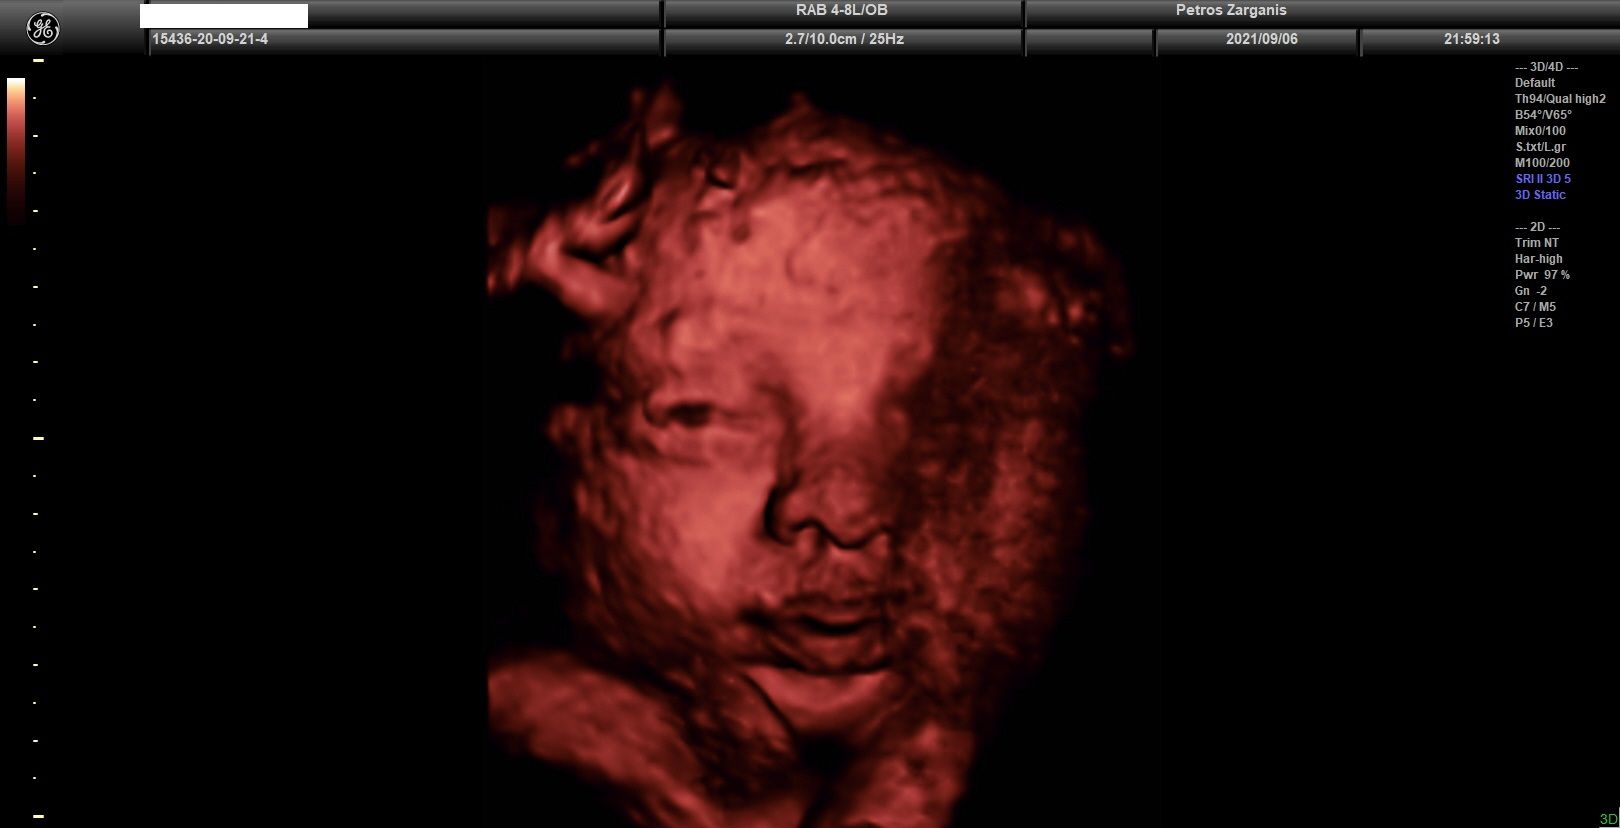 Εμβρυο 33 εβδομάδων + 4  ημερών με ανοικτά τα μάτια (το ένα φαίνεται μόνον) [2]